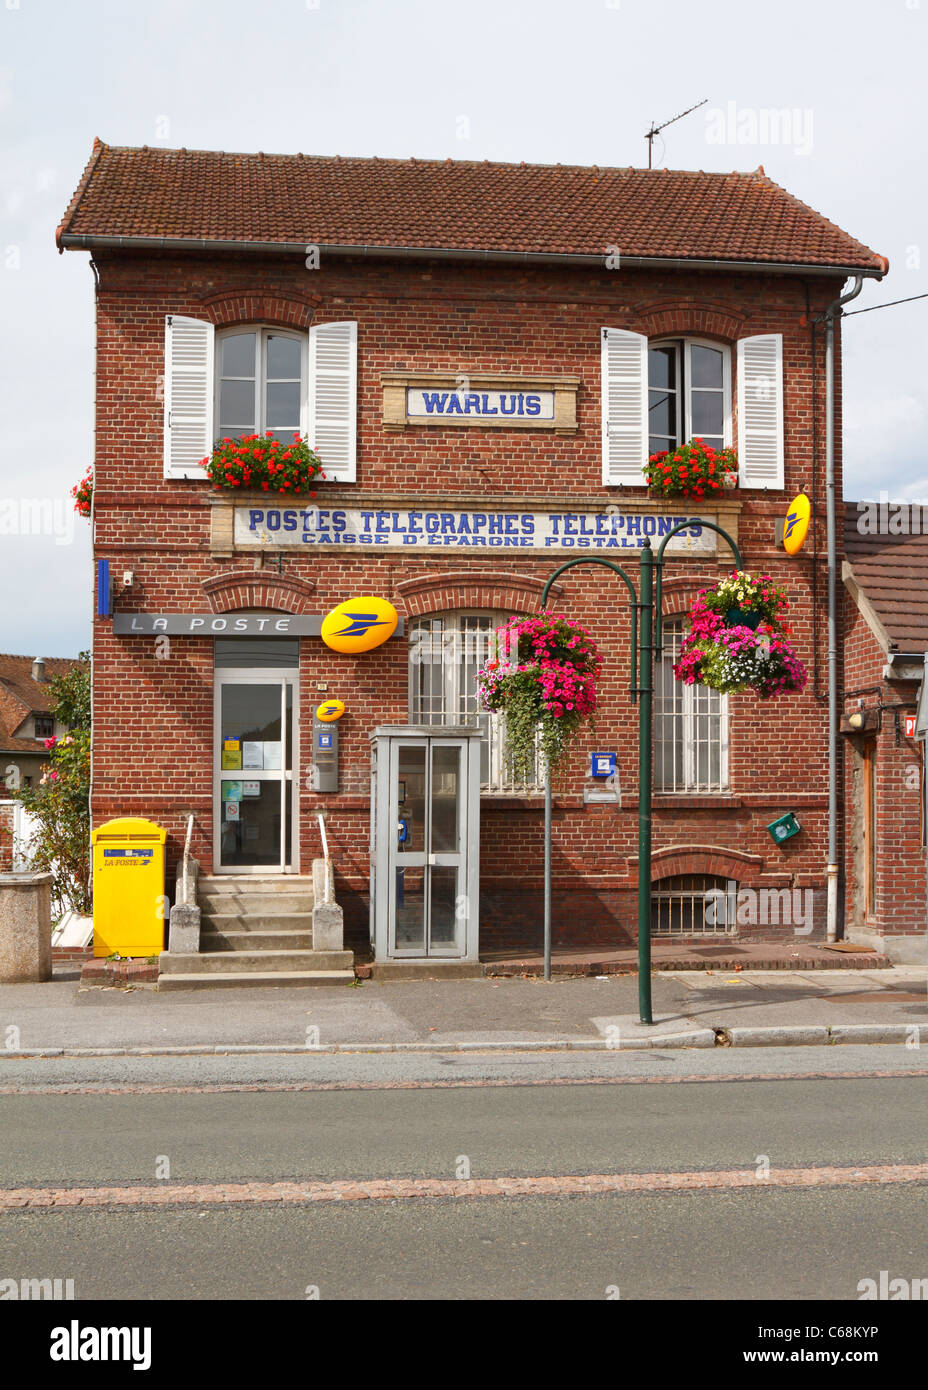 La Poste attrayant, bureau de poste à Warluis près de Beauvais, France, Europe. Banque D'Images